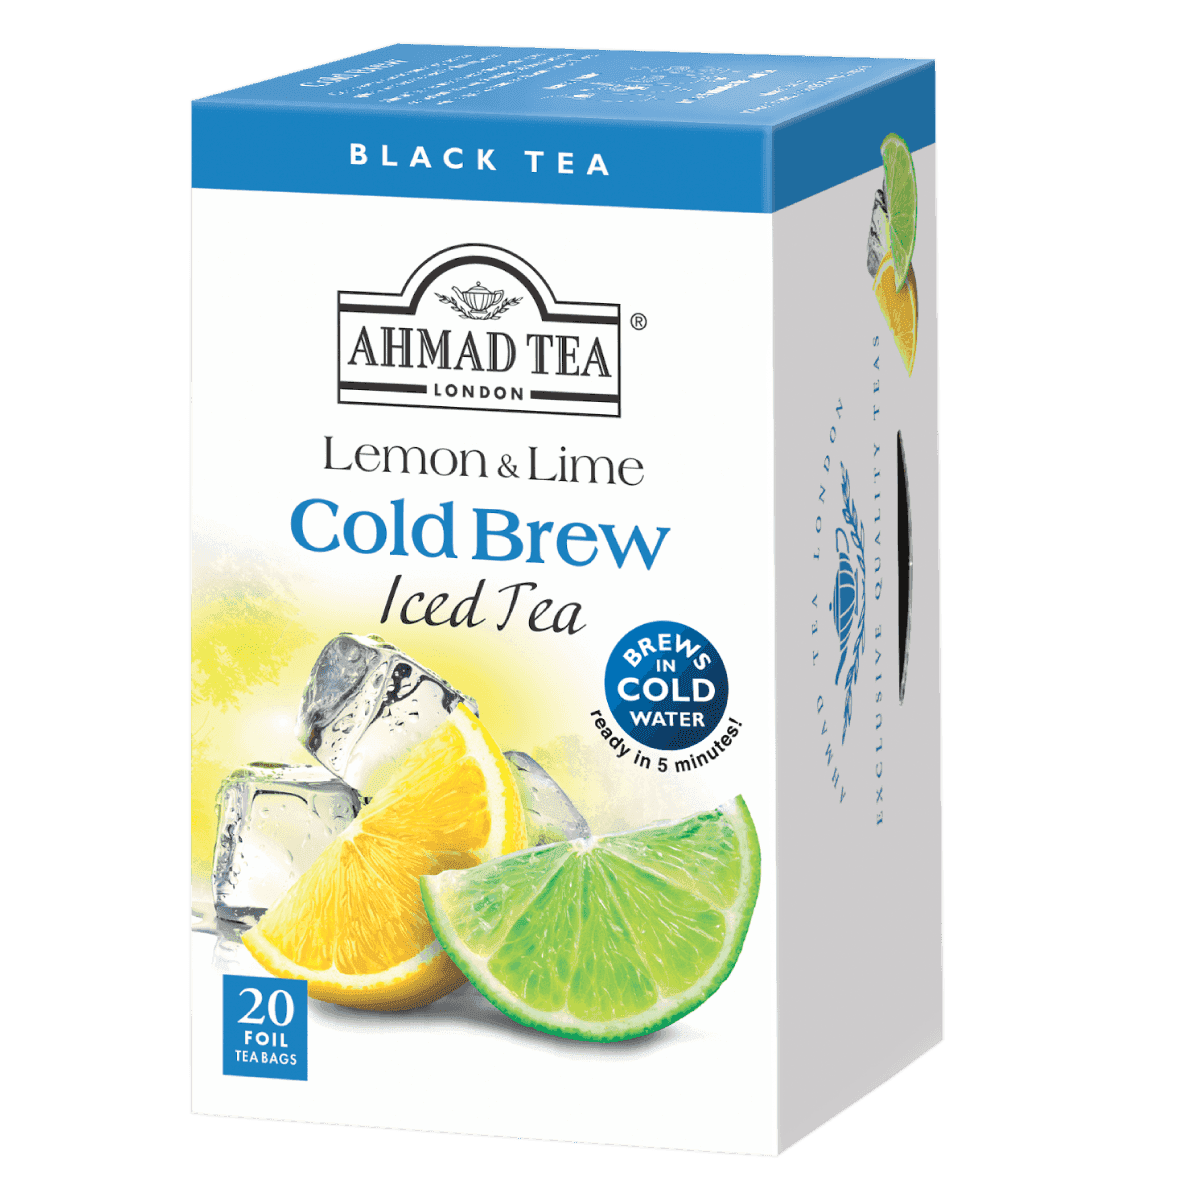 Cold Brew Ahmad Tea. Чай Ахмад с лимоном. Ahmad Tea холодный чай. Ice Tea в пакетиках. Айс чай